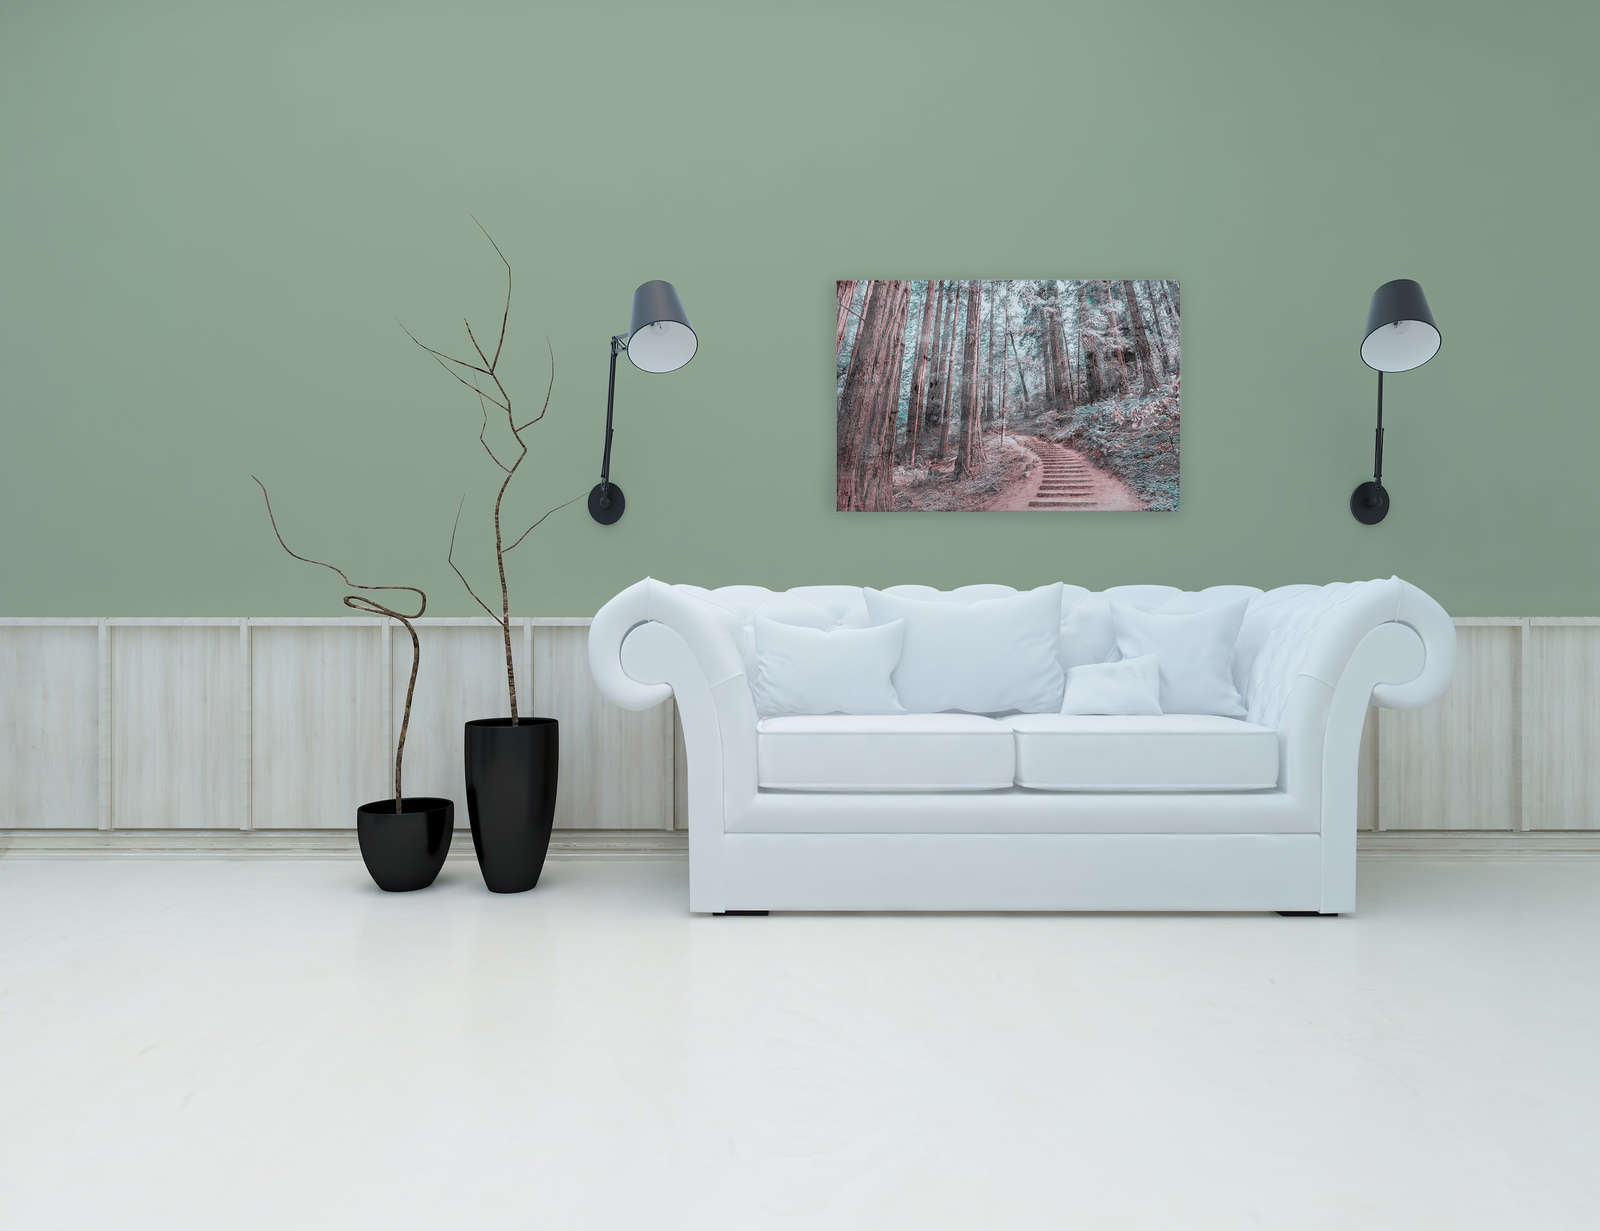             Canvas met houten trap door het bos | bruin, groen, wit - 0.90 m x 0.60 m
        